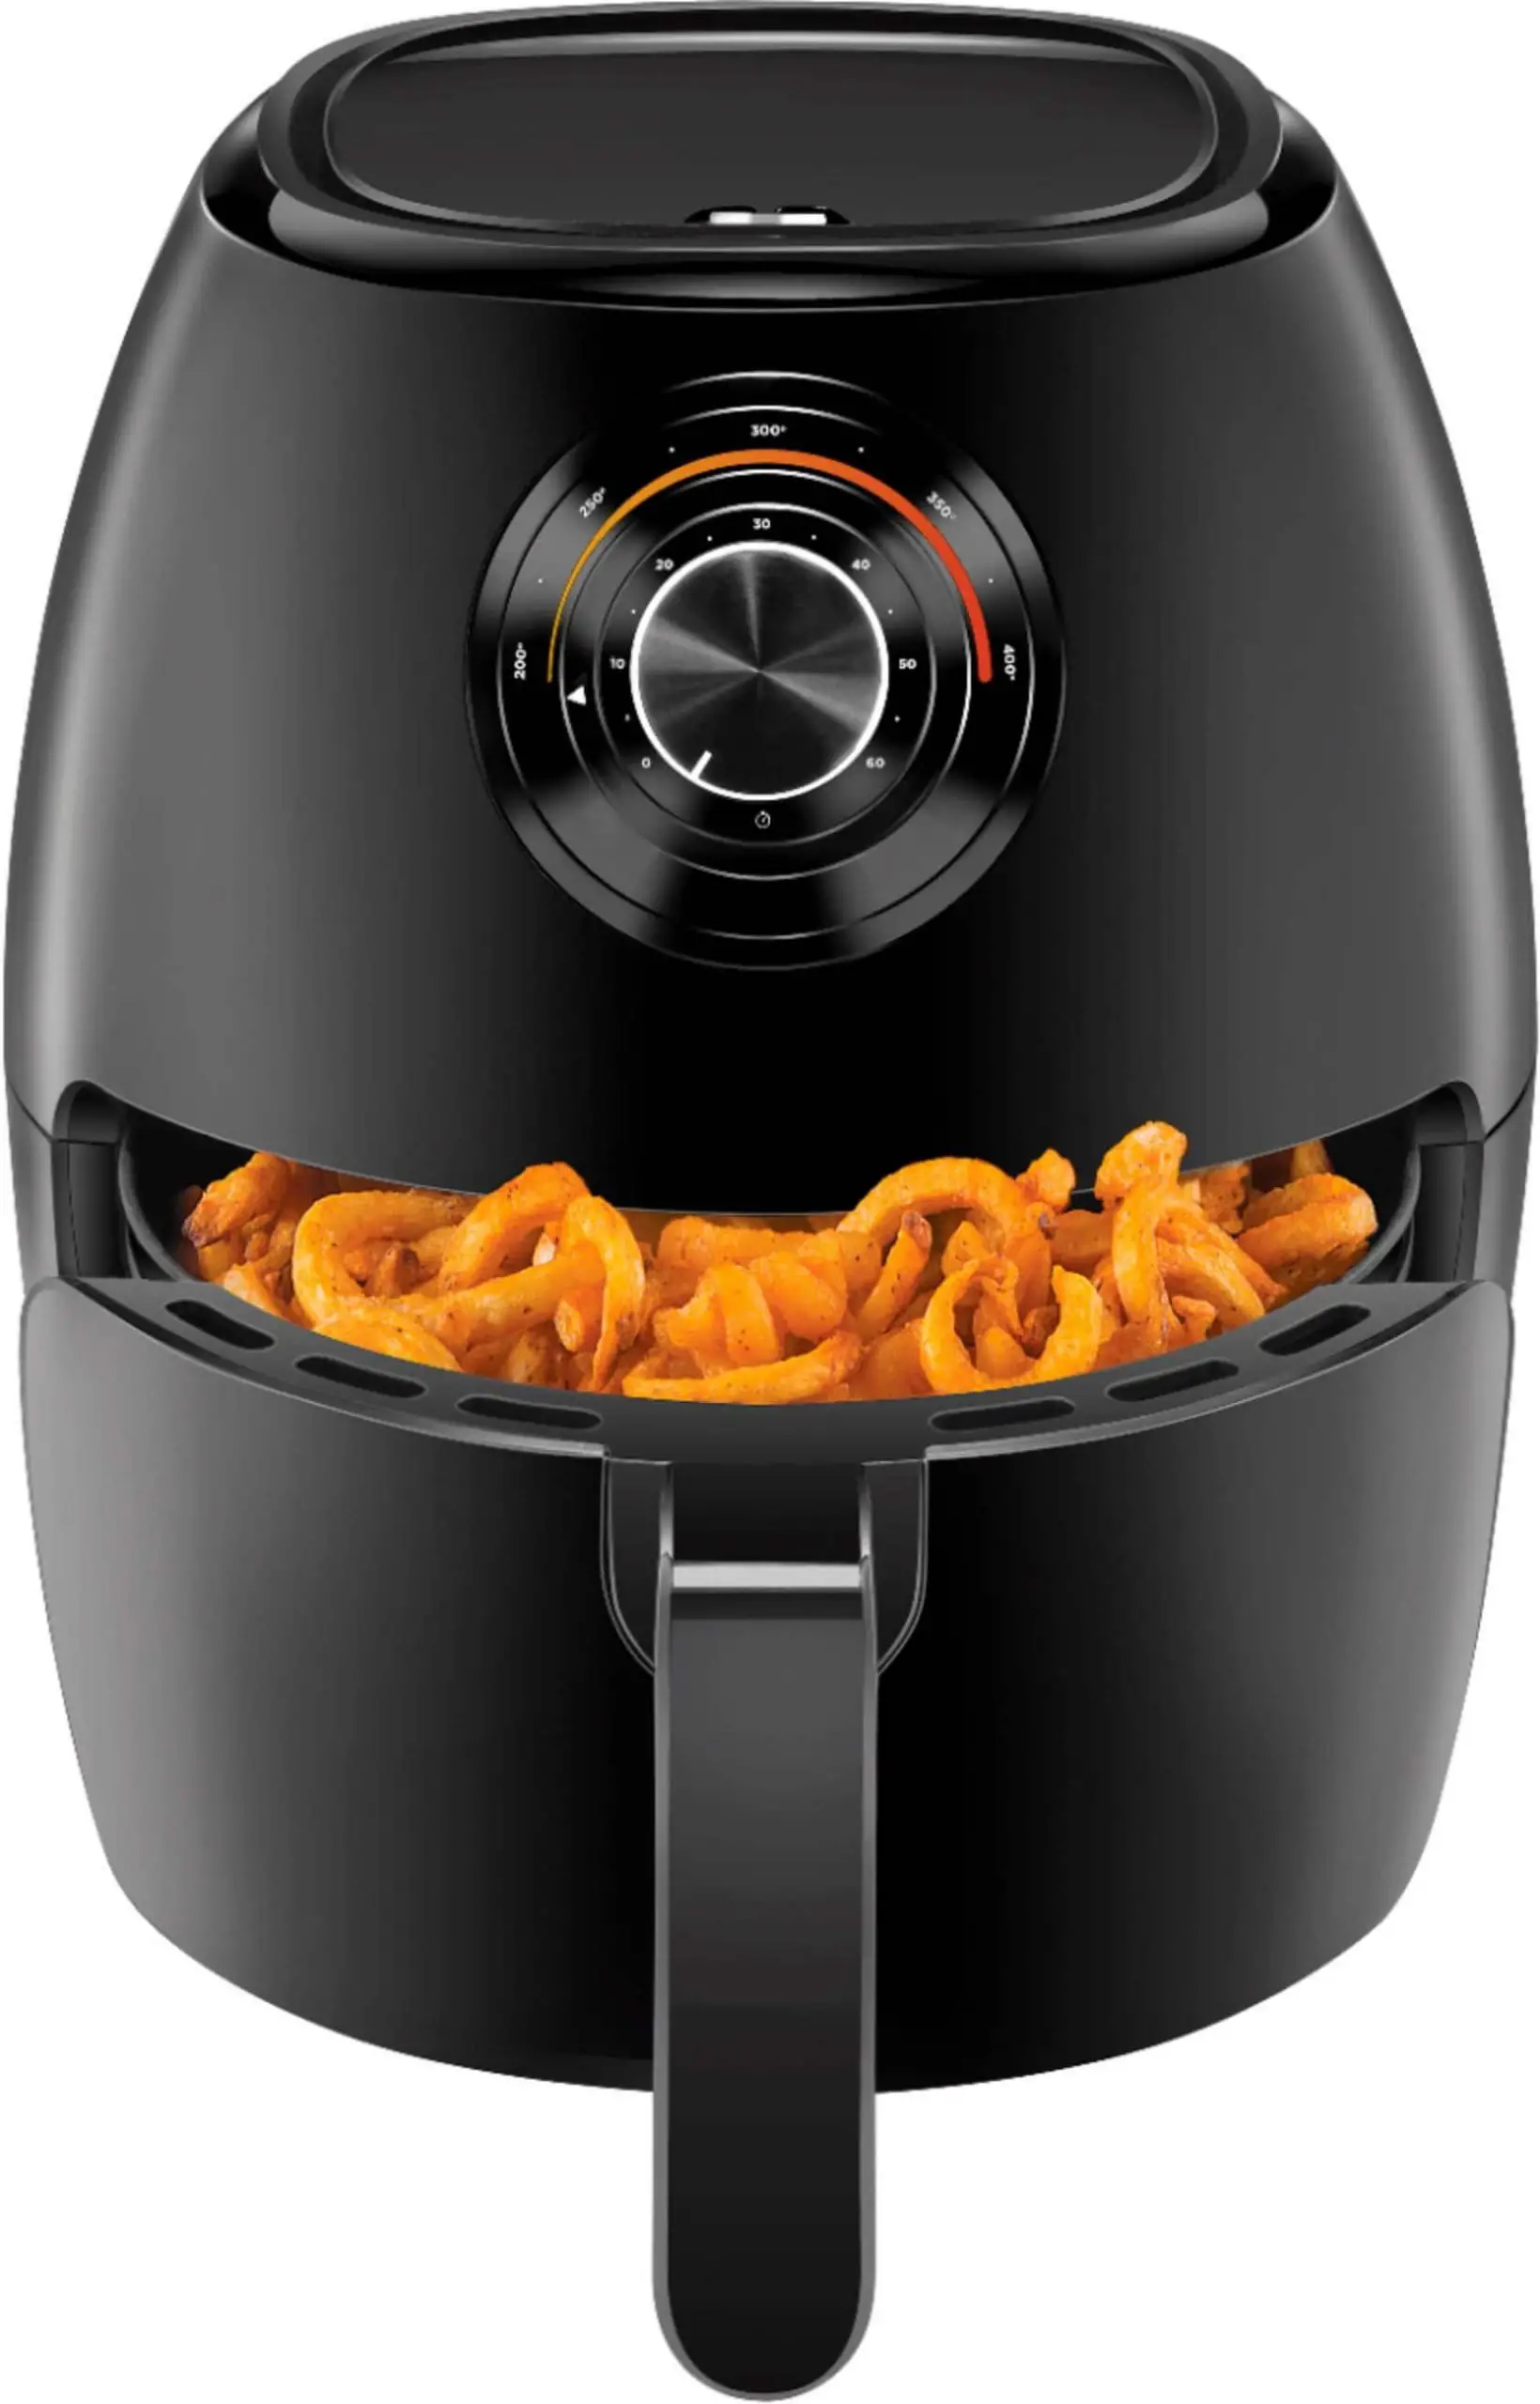 Chefman Toaster Oven Air Fryer Best Buy